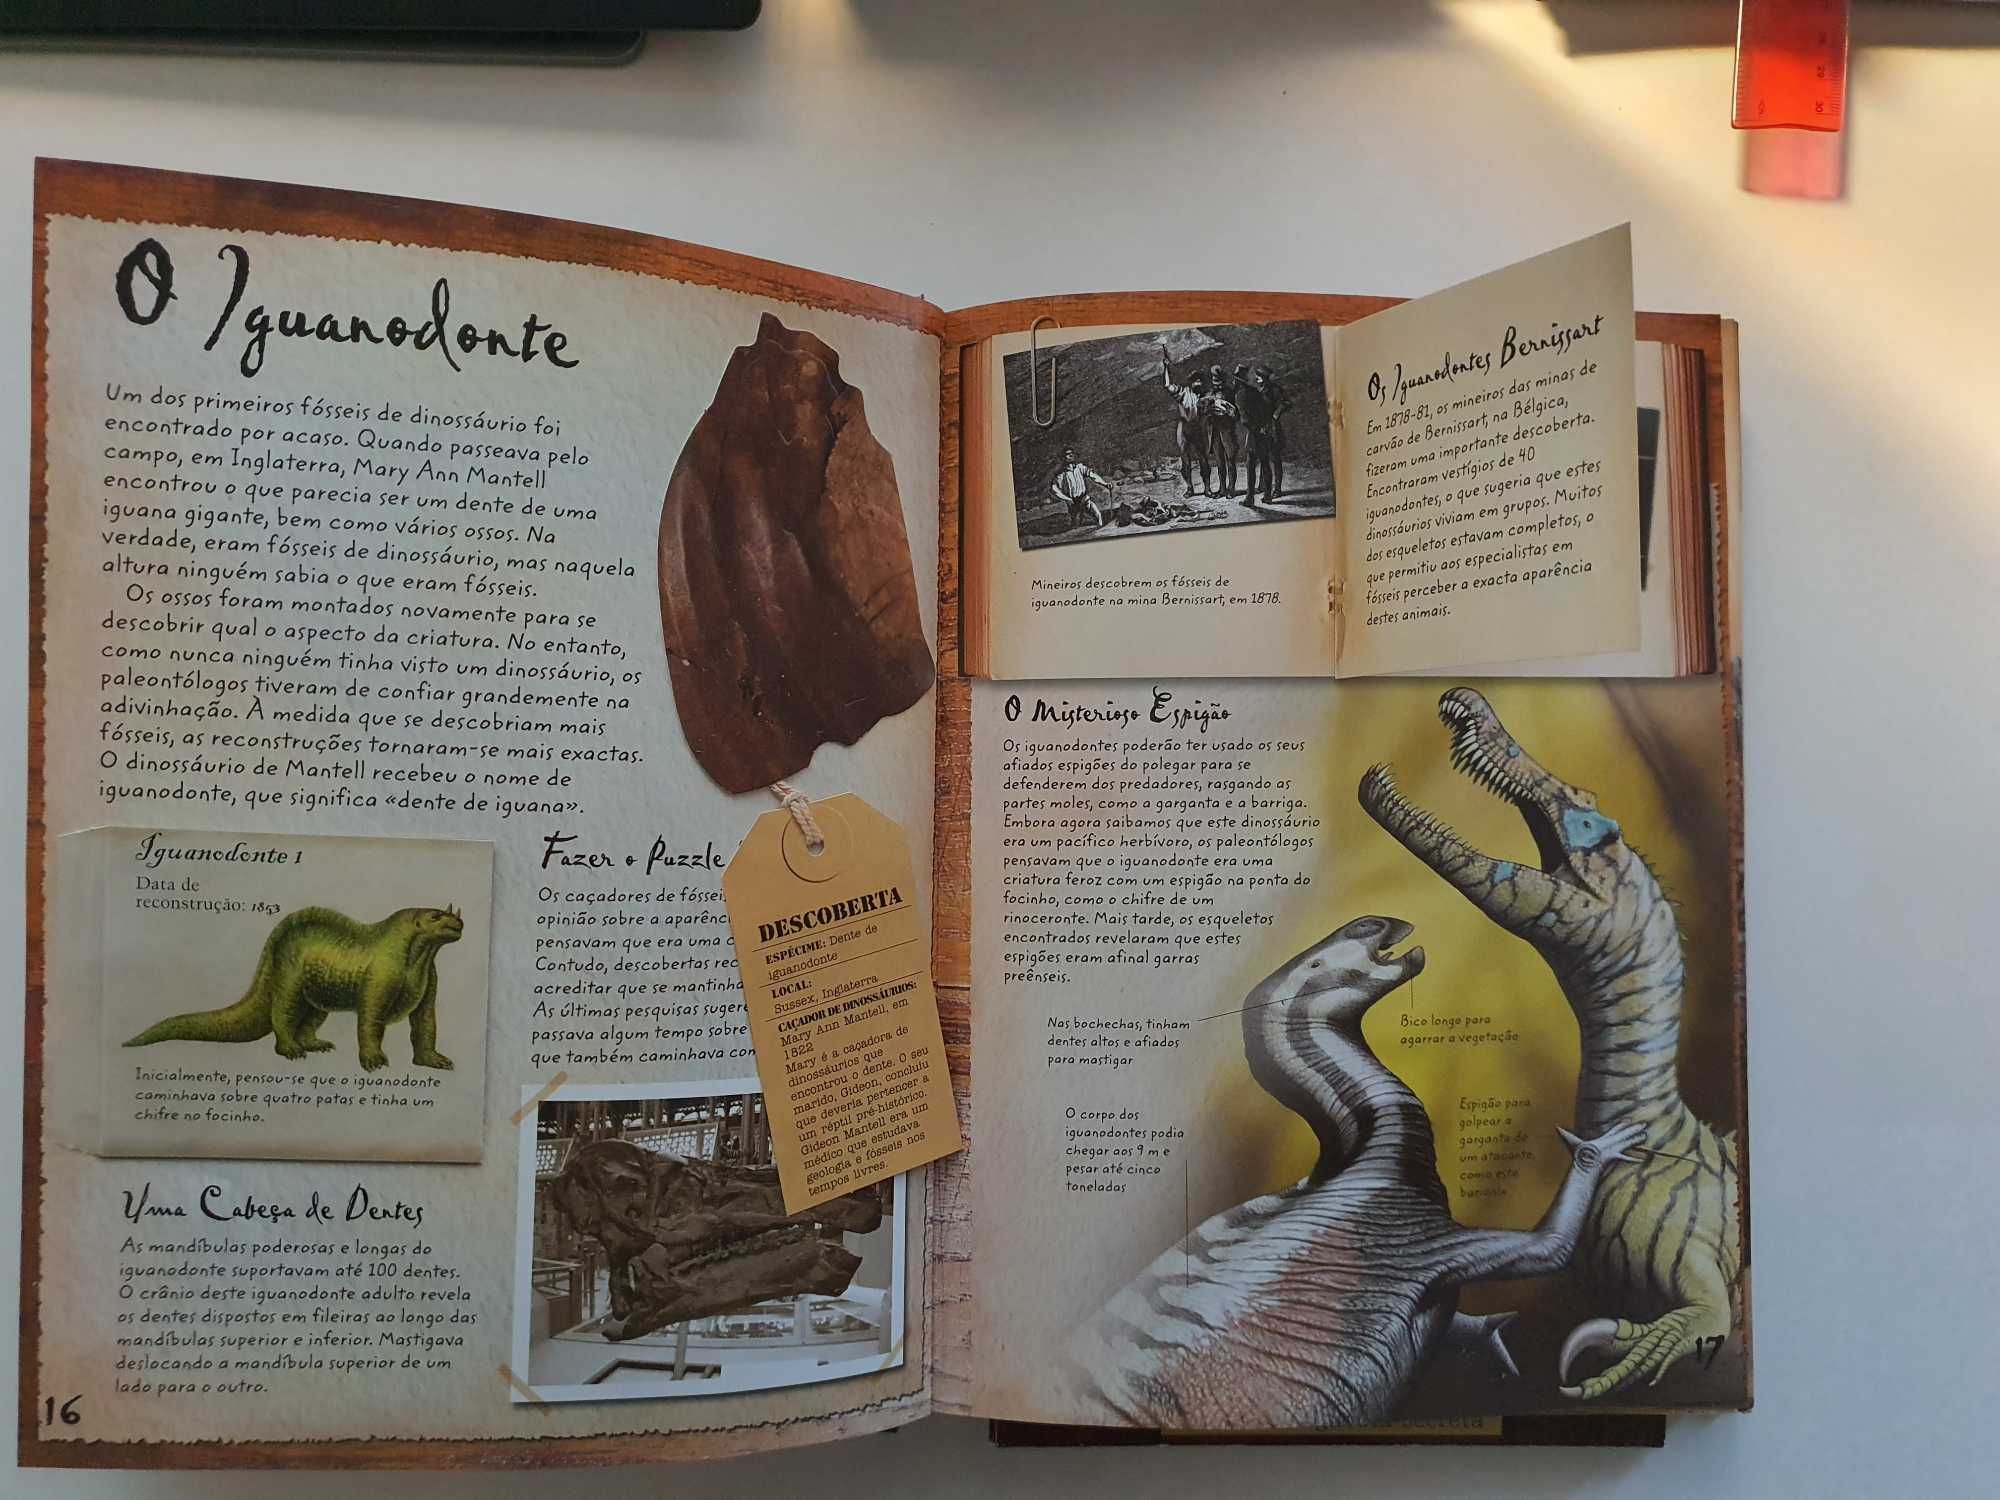 Livro Caçadores de Dinossáurios